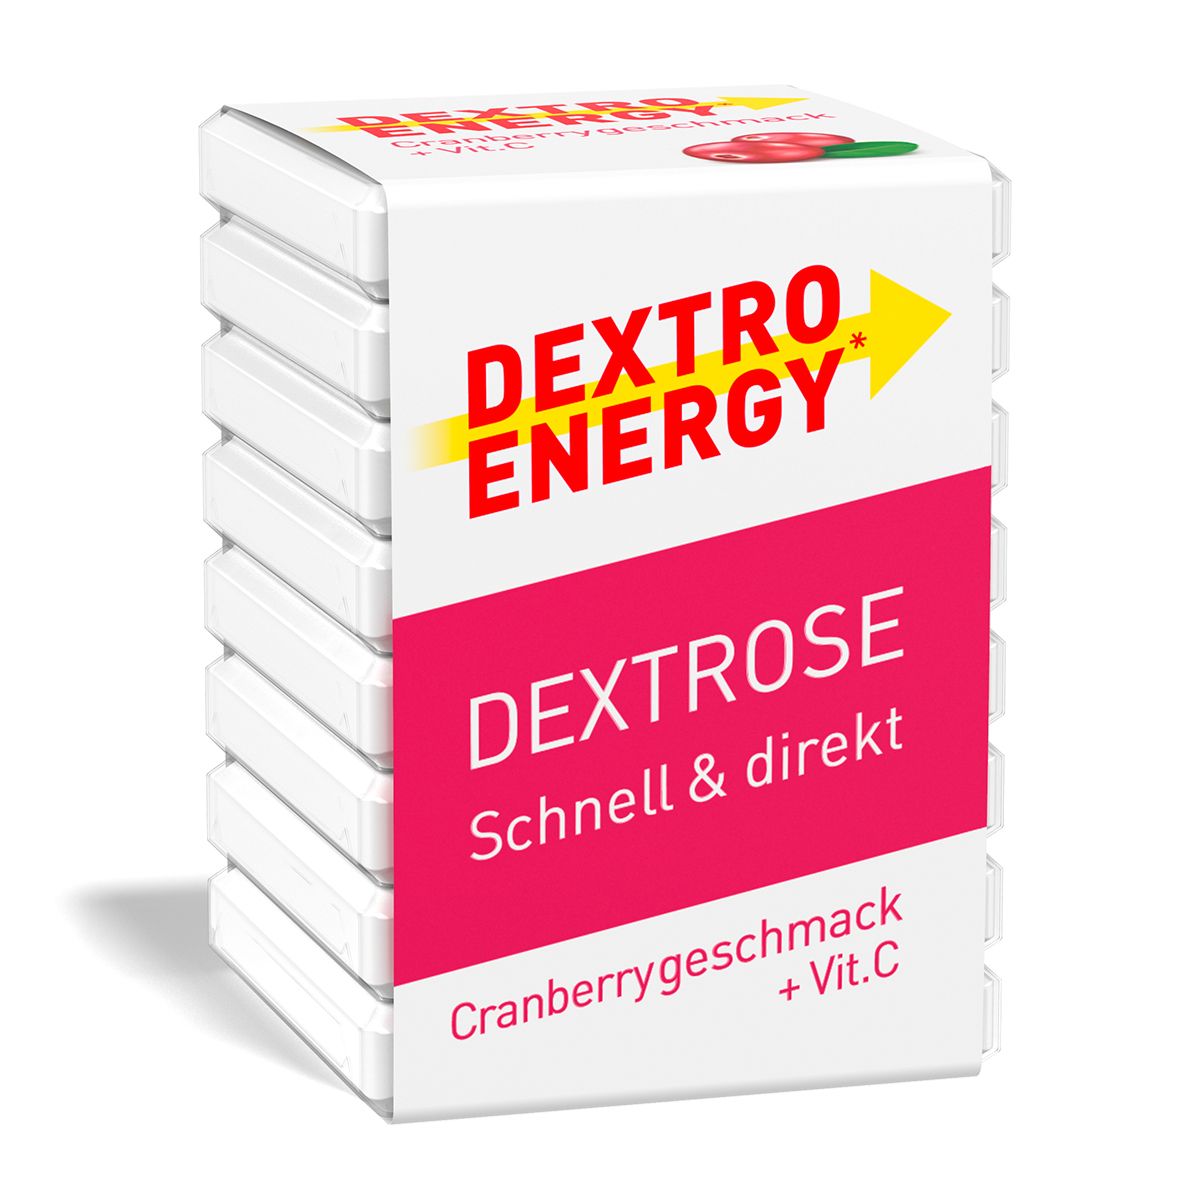 Image of Dextro Energy Cranberry